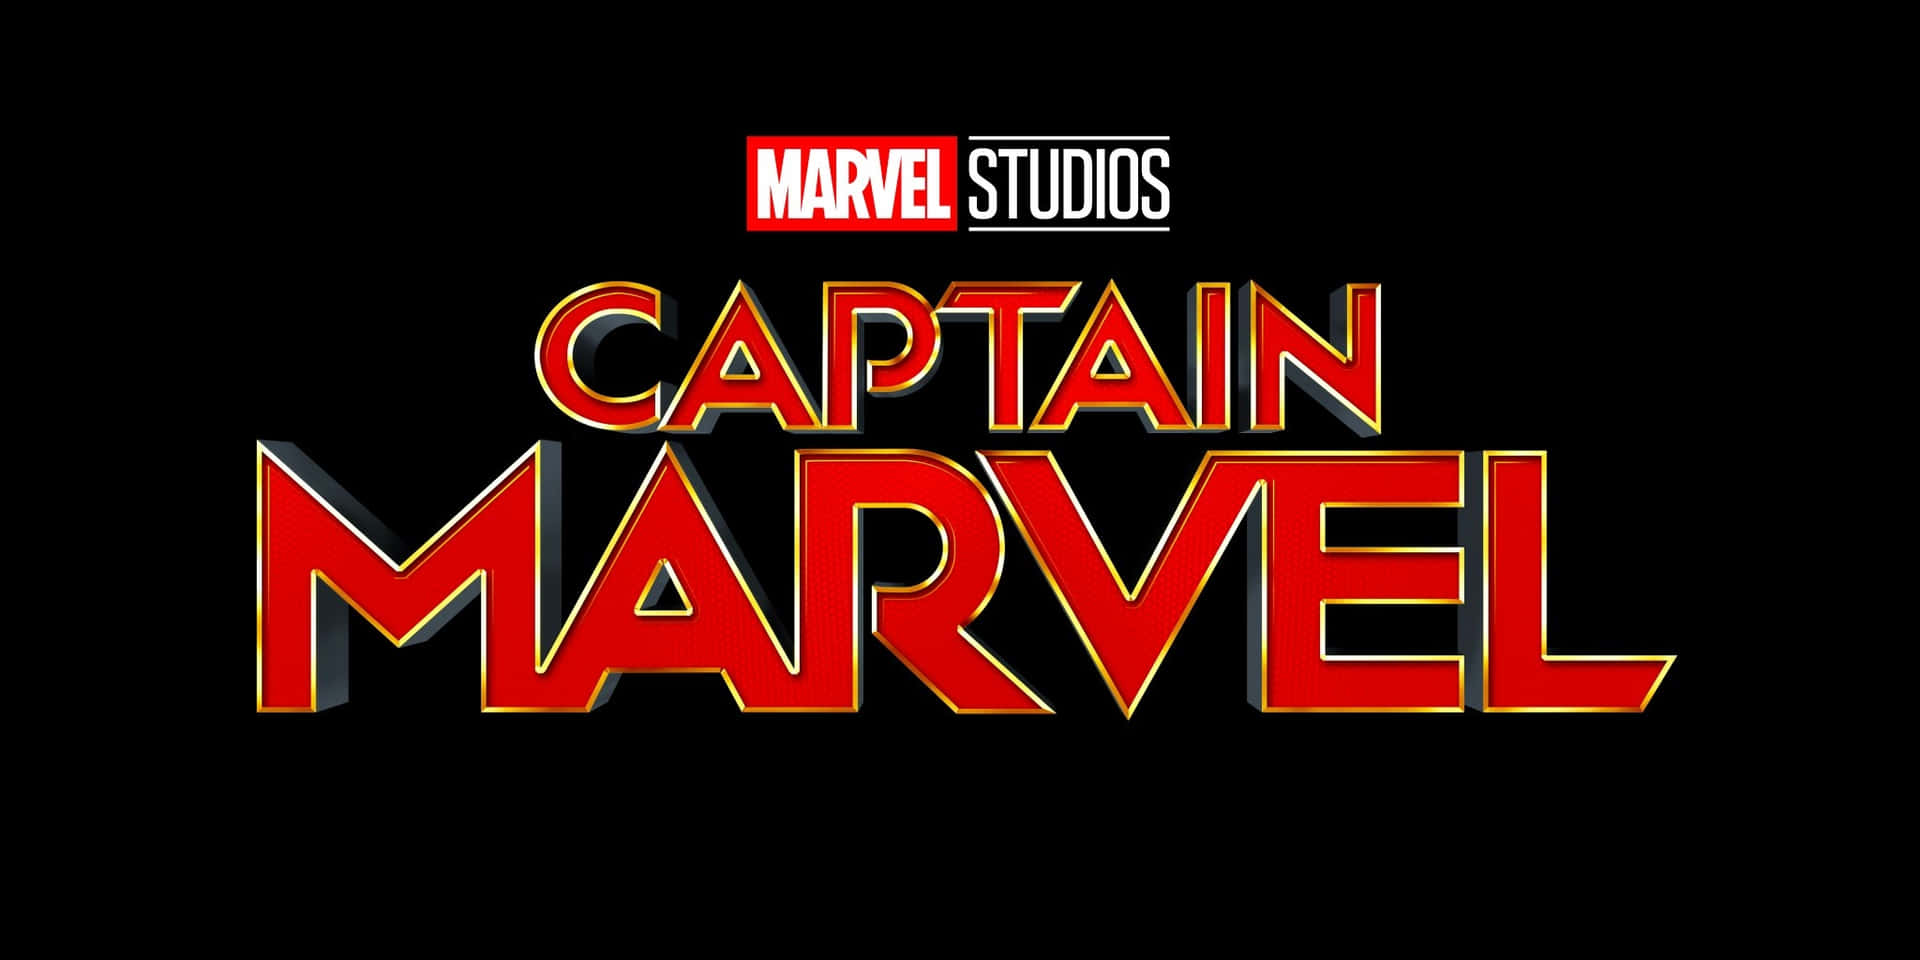 Brie Larson as Captain Marvel Wallpaper